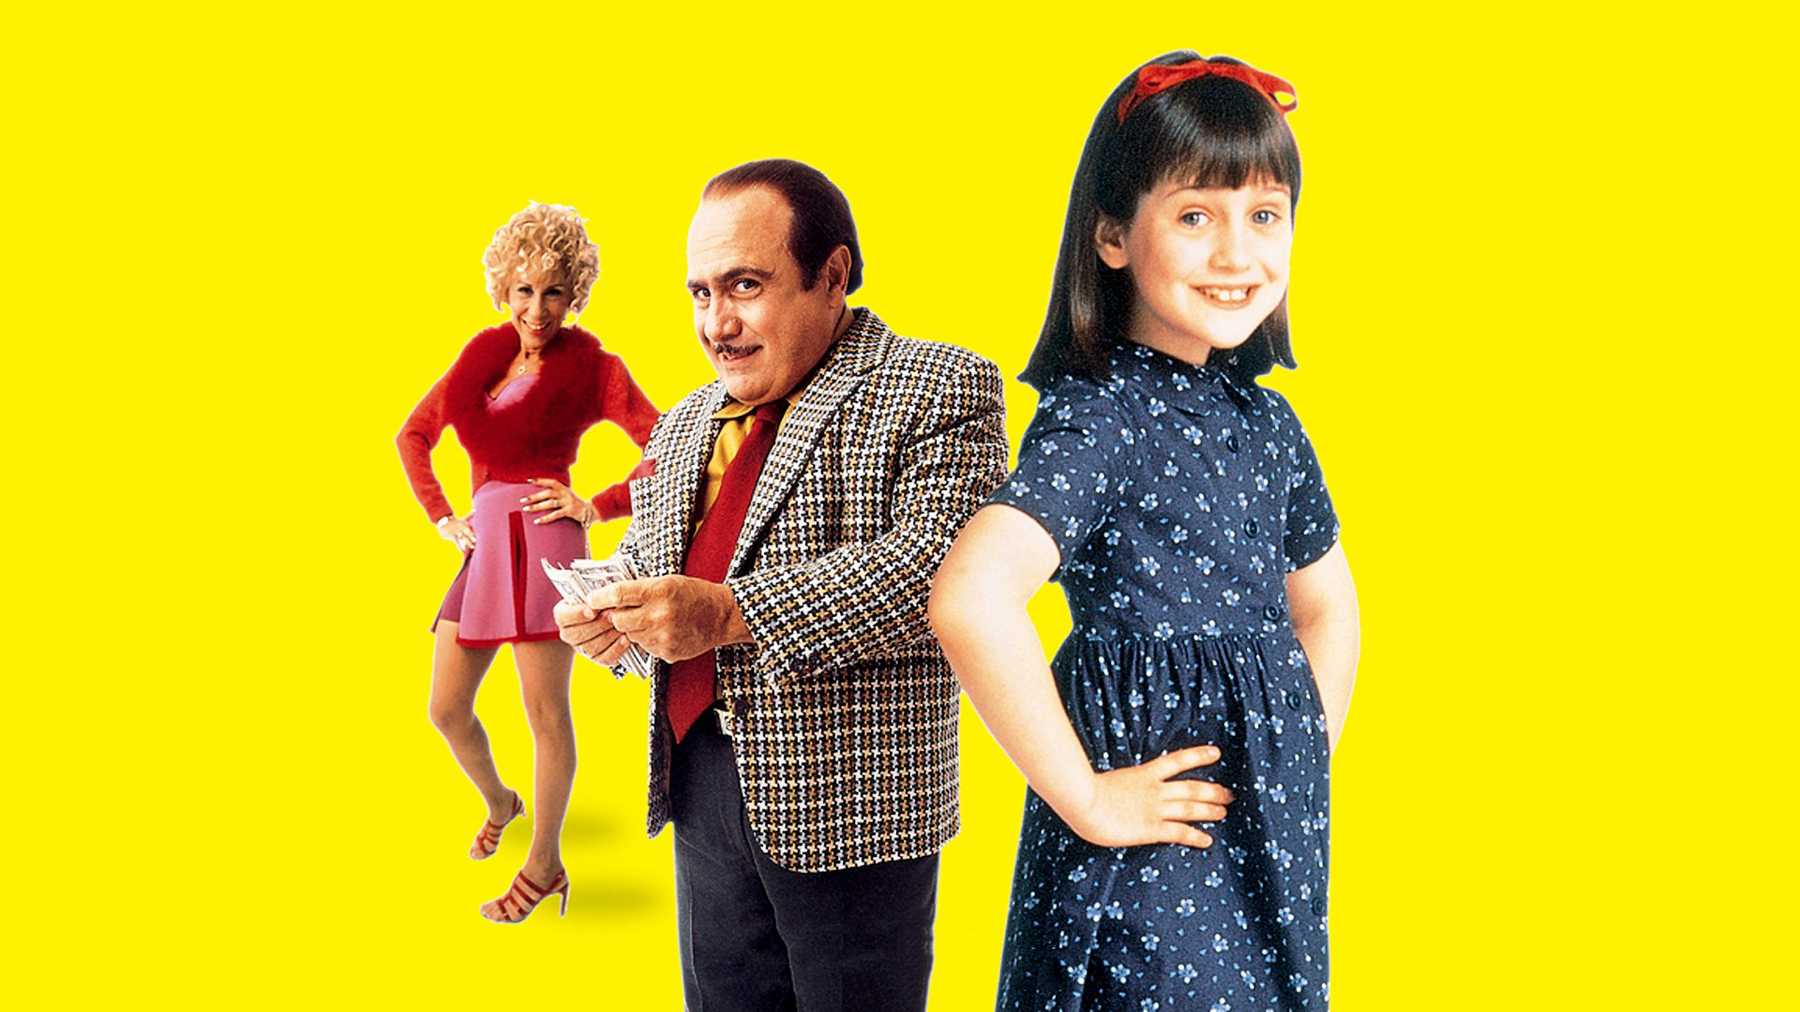 La película "Matilda" es una de las más recordadas de la década de 1990. (Foto Prensa Libre: Tristar Pictures)